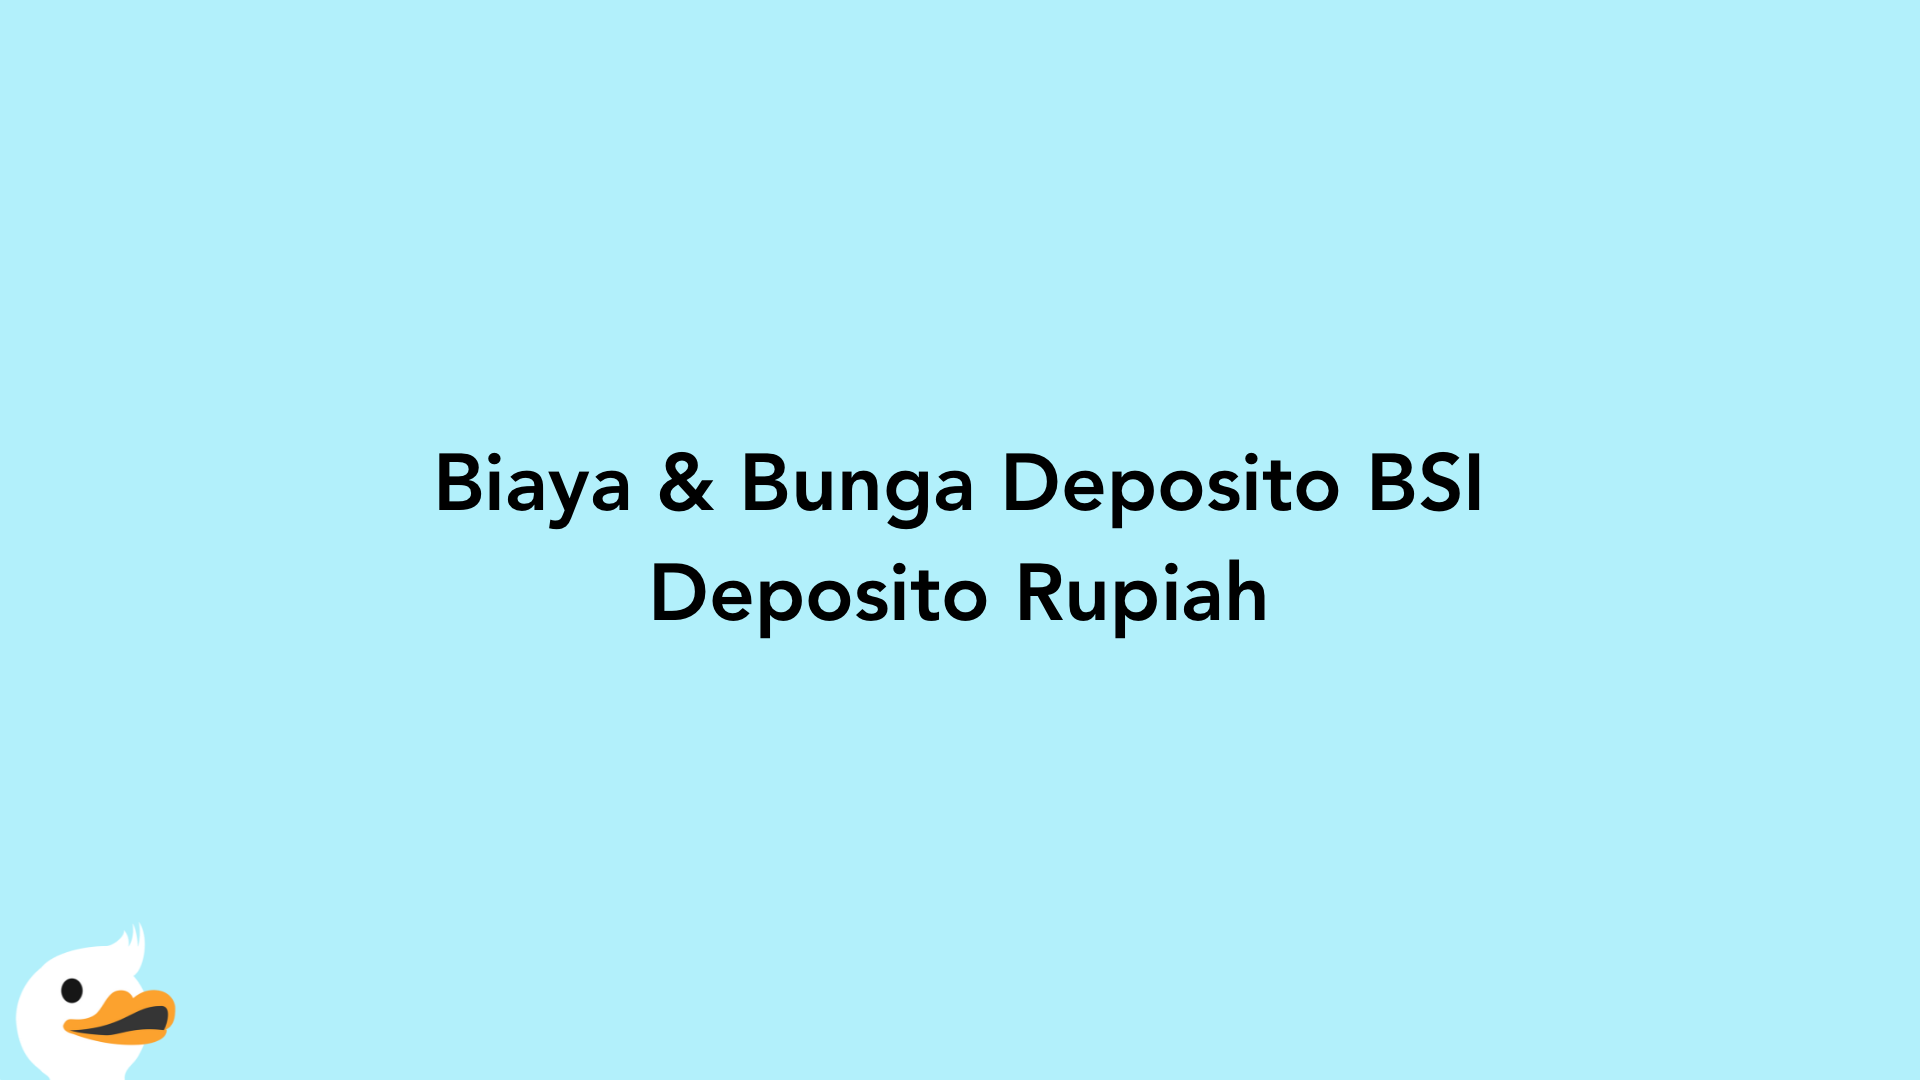 Biaya & Bunga Deposito BSI Deposito Rupiah